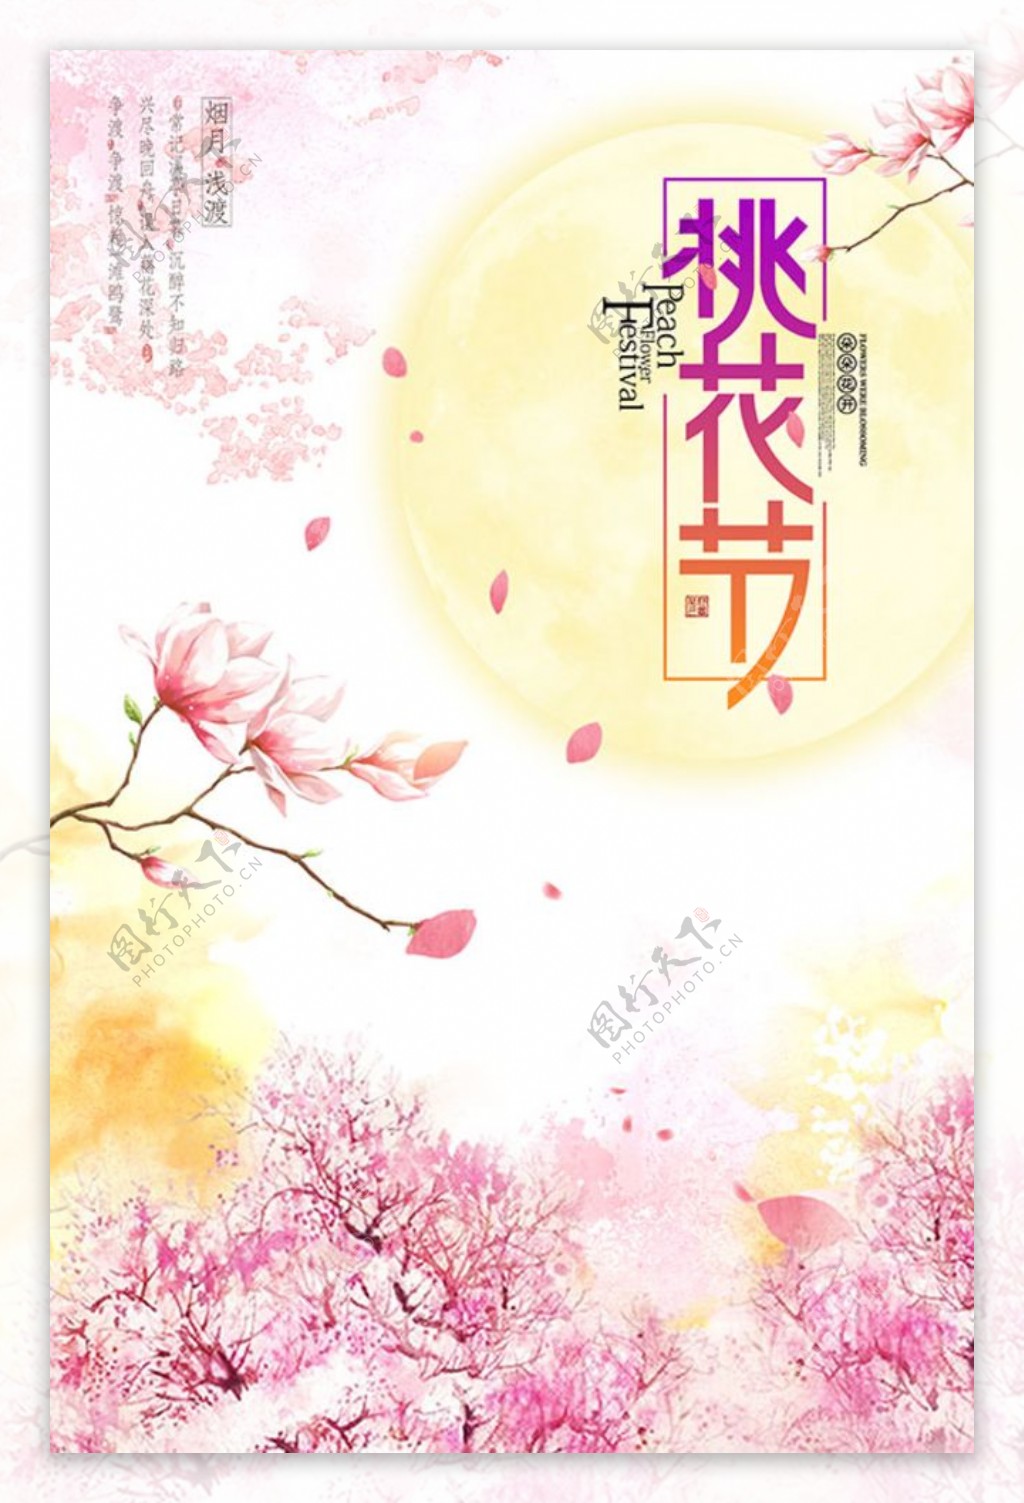 春季桃花节海报